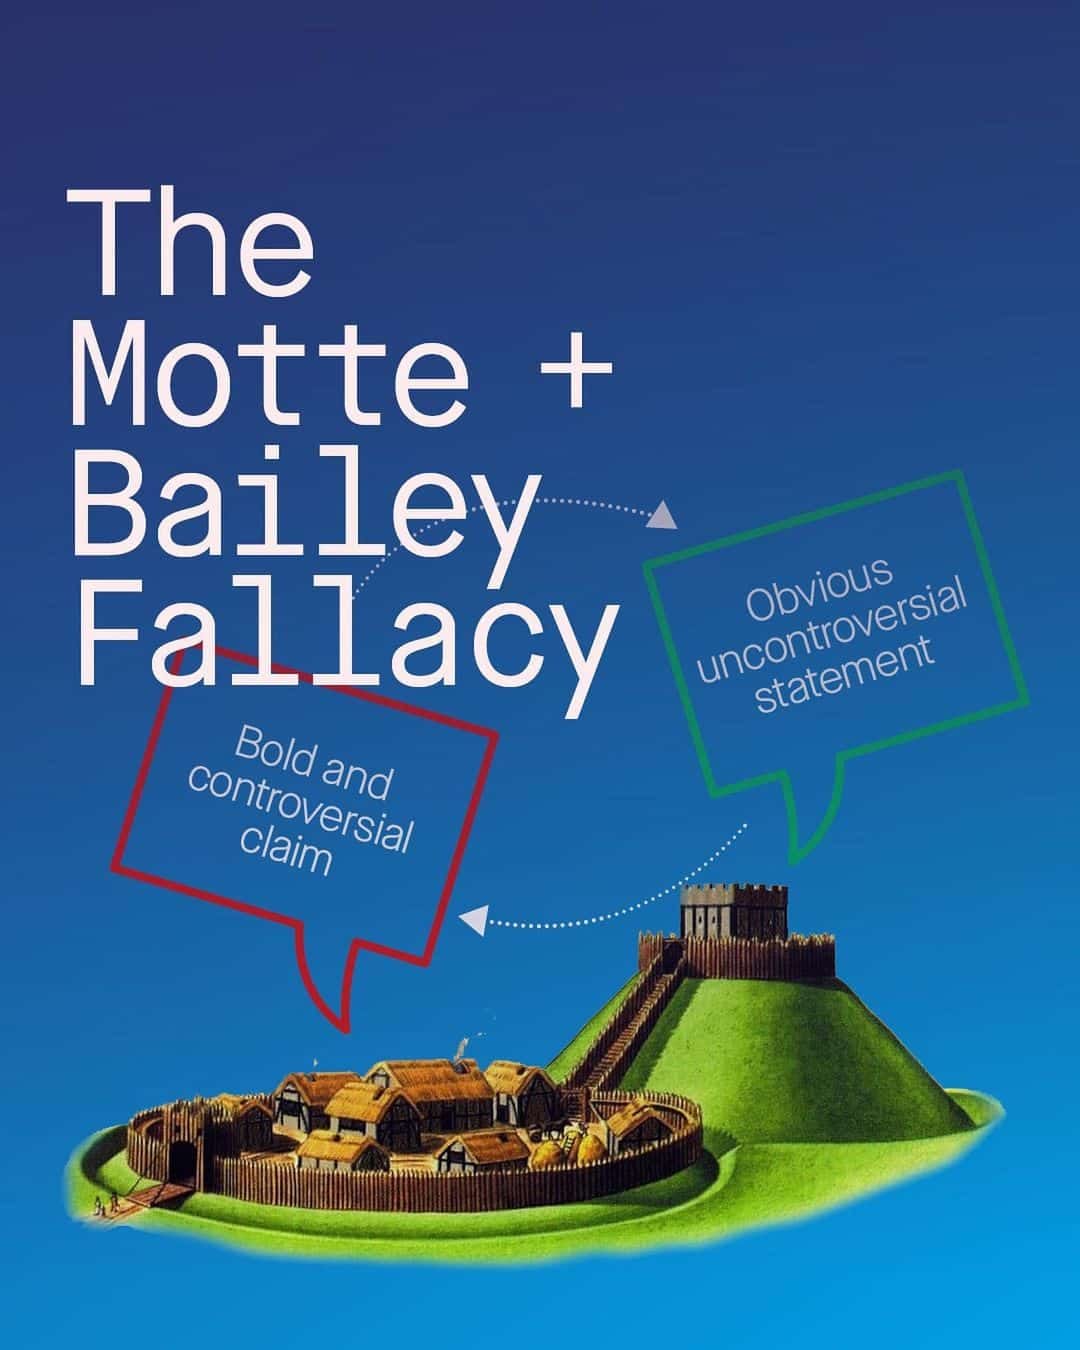 The Motte + Bailey Fallacy - The Tin Men Blog